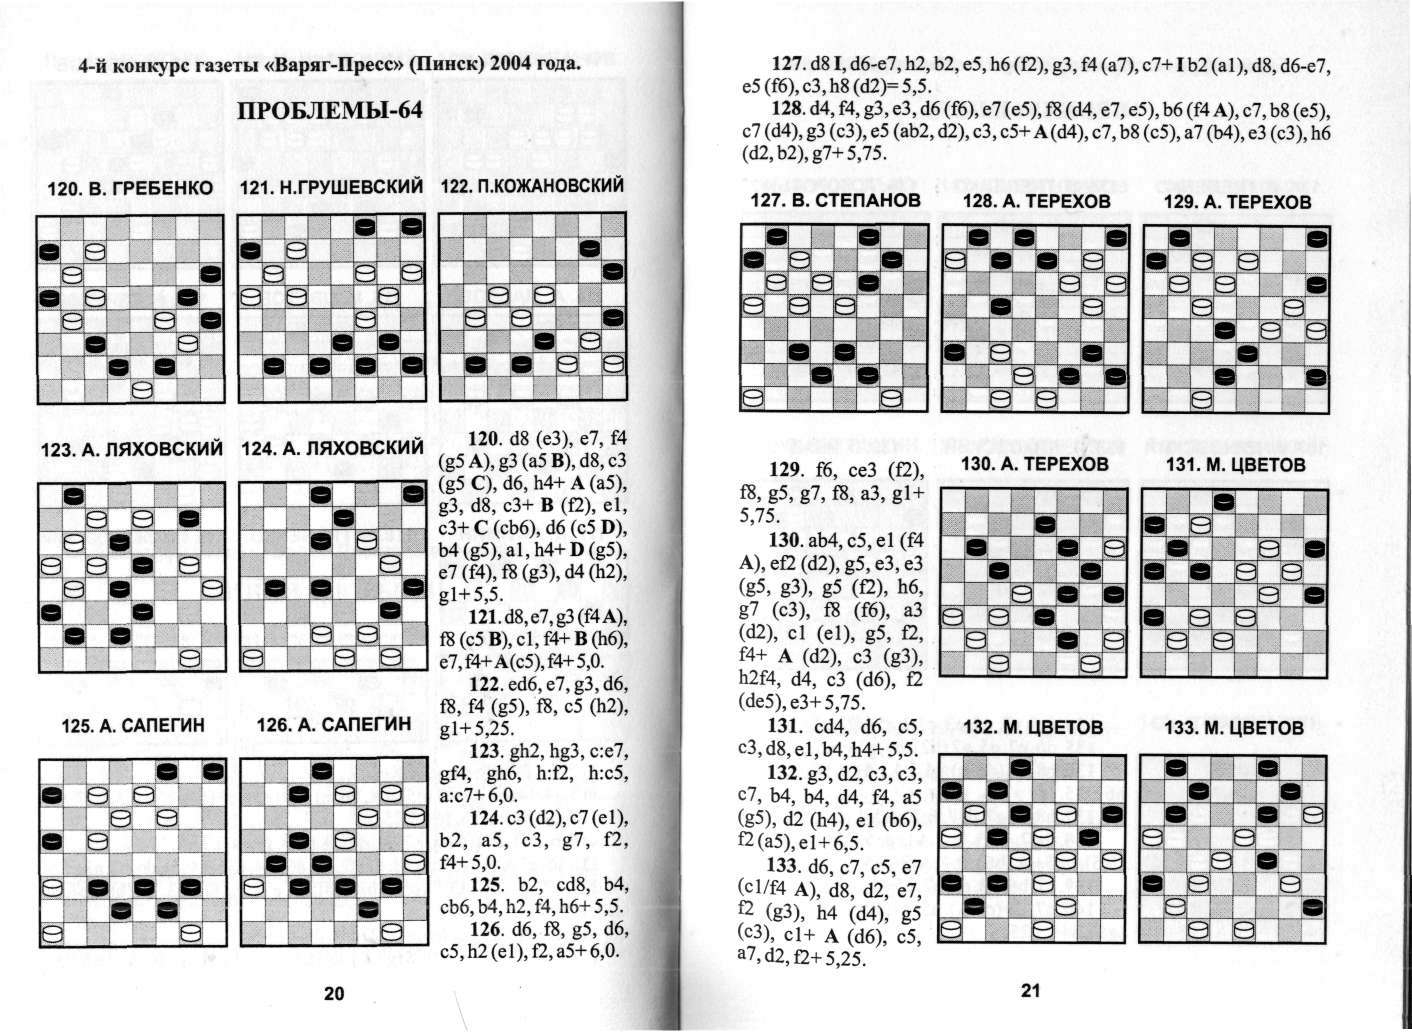 КОГОТЬКО_По следам шашечной композиции_page-0011.jpg